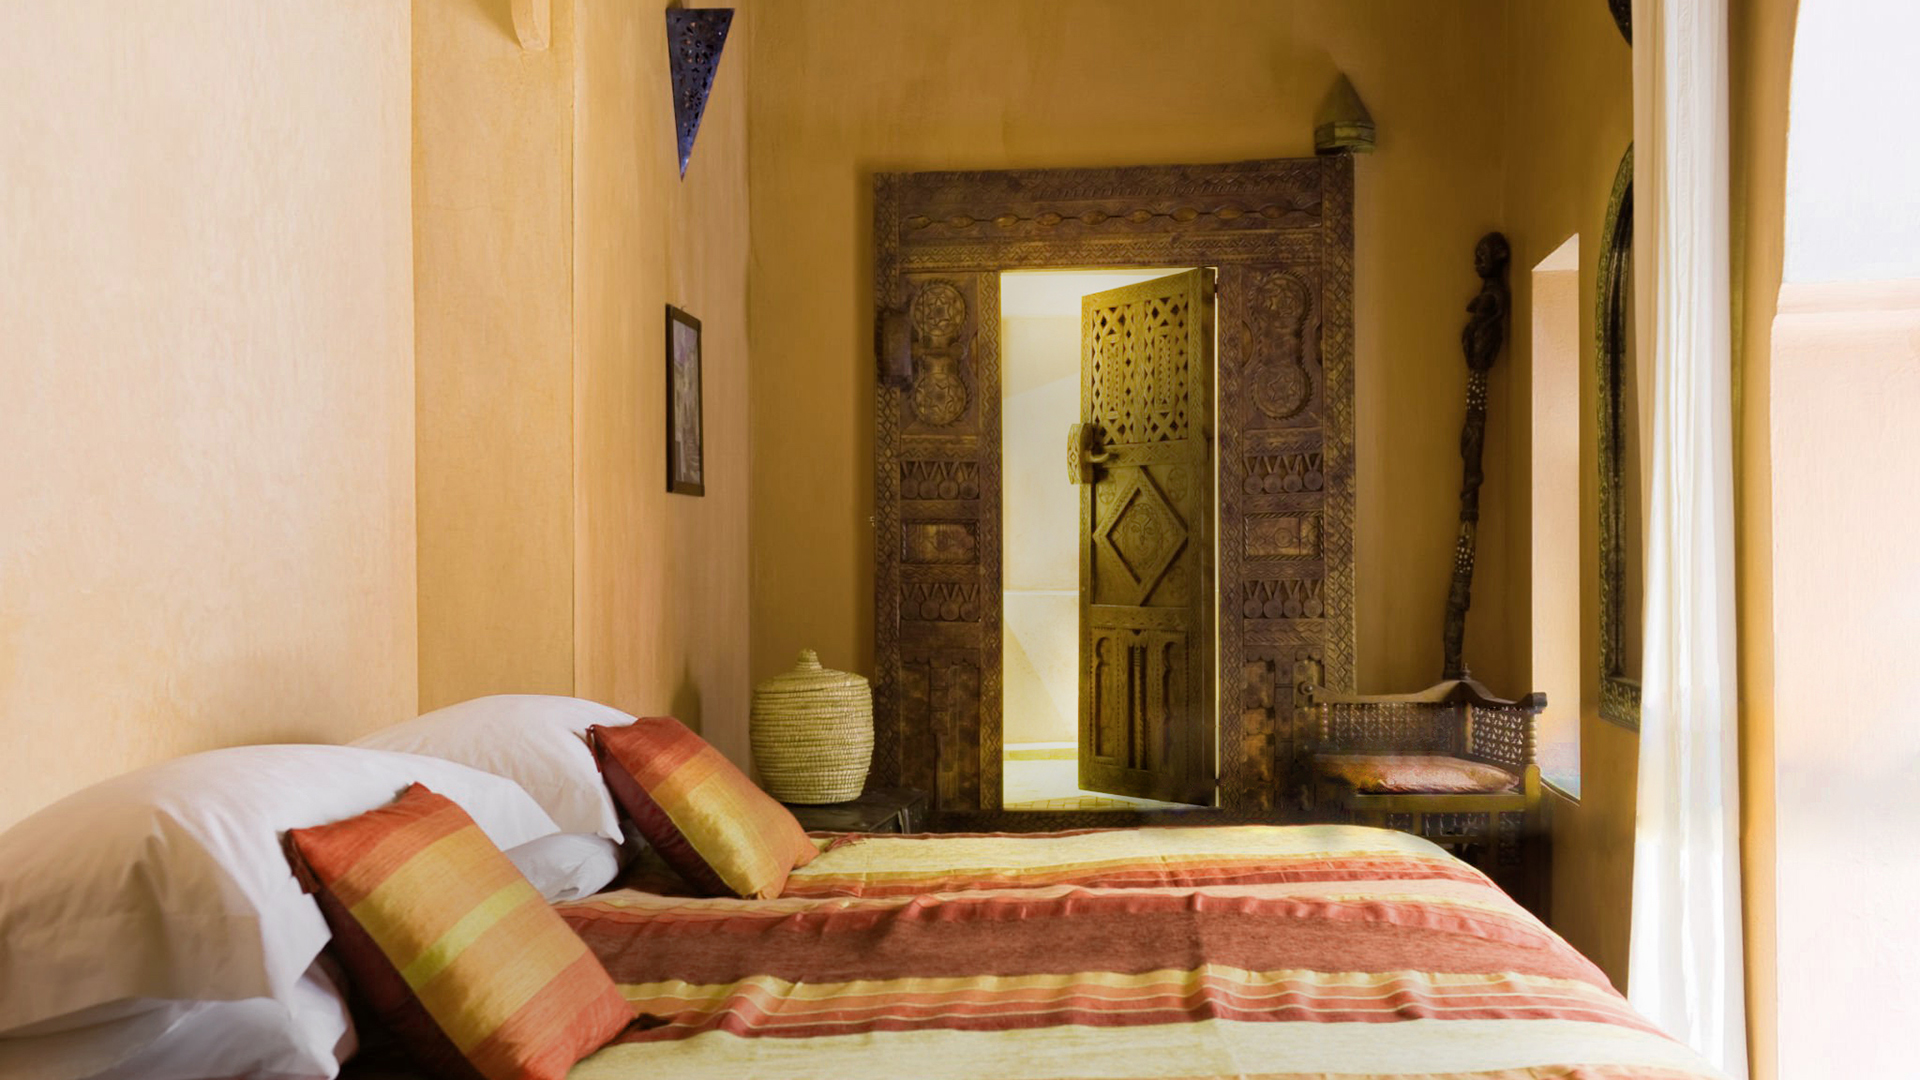 Арабская спальня со стенами в технике таделакт